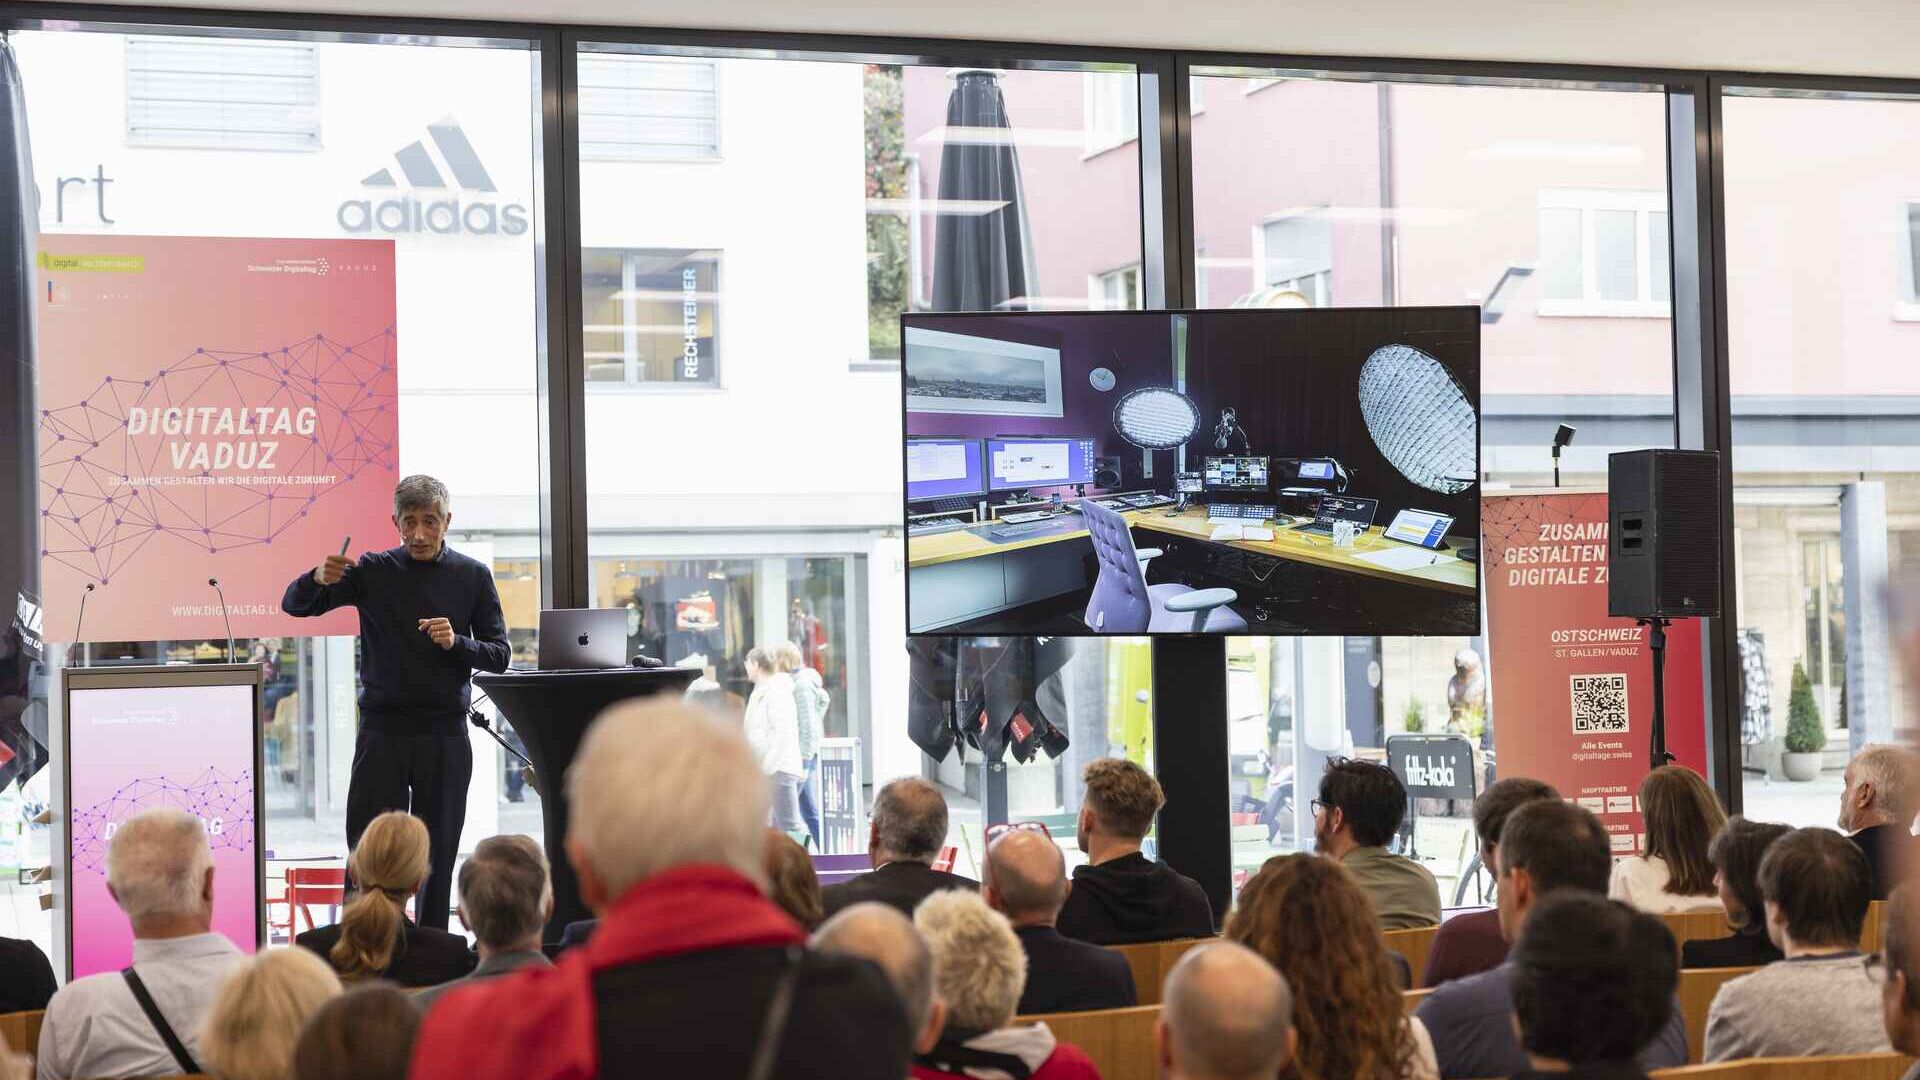 Ang "Digitaltag Vaduz" ay tinanggap ng Kunstmuseum ng kabisera ng Principality of Liechtenstein noong Sabado 15 Oktubre 2022